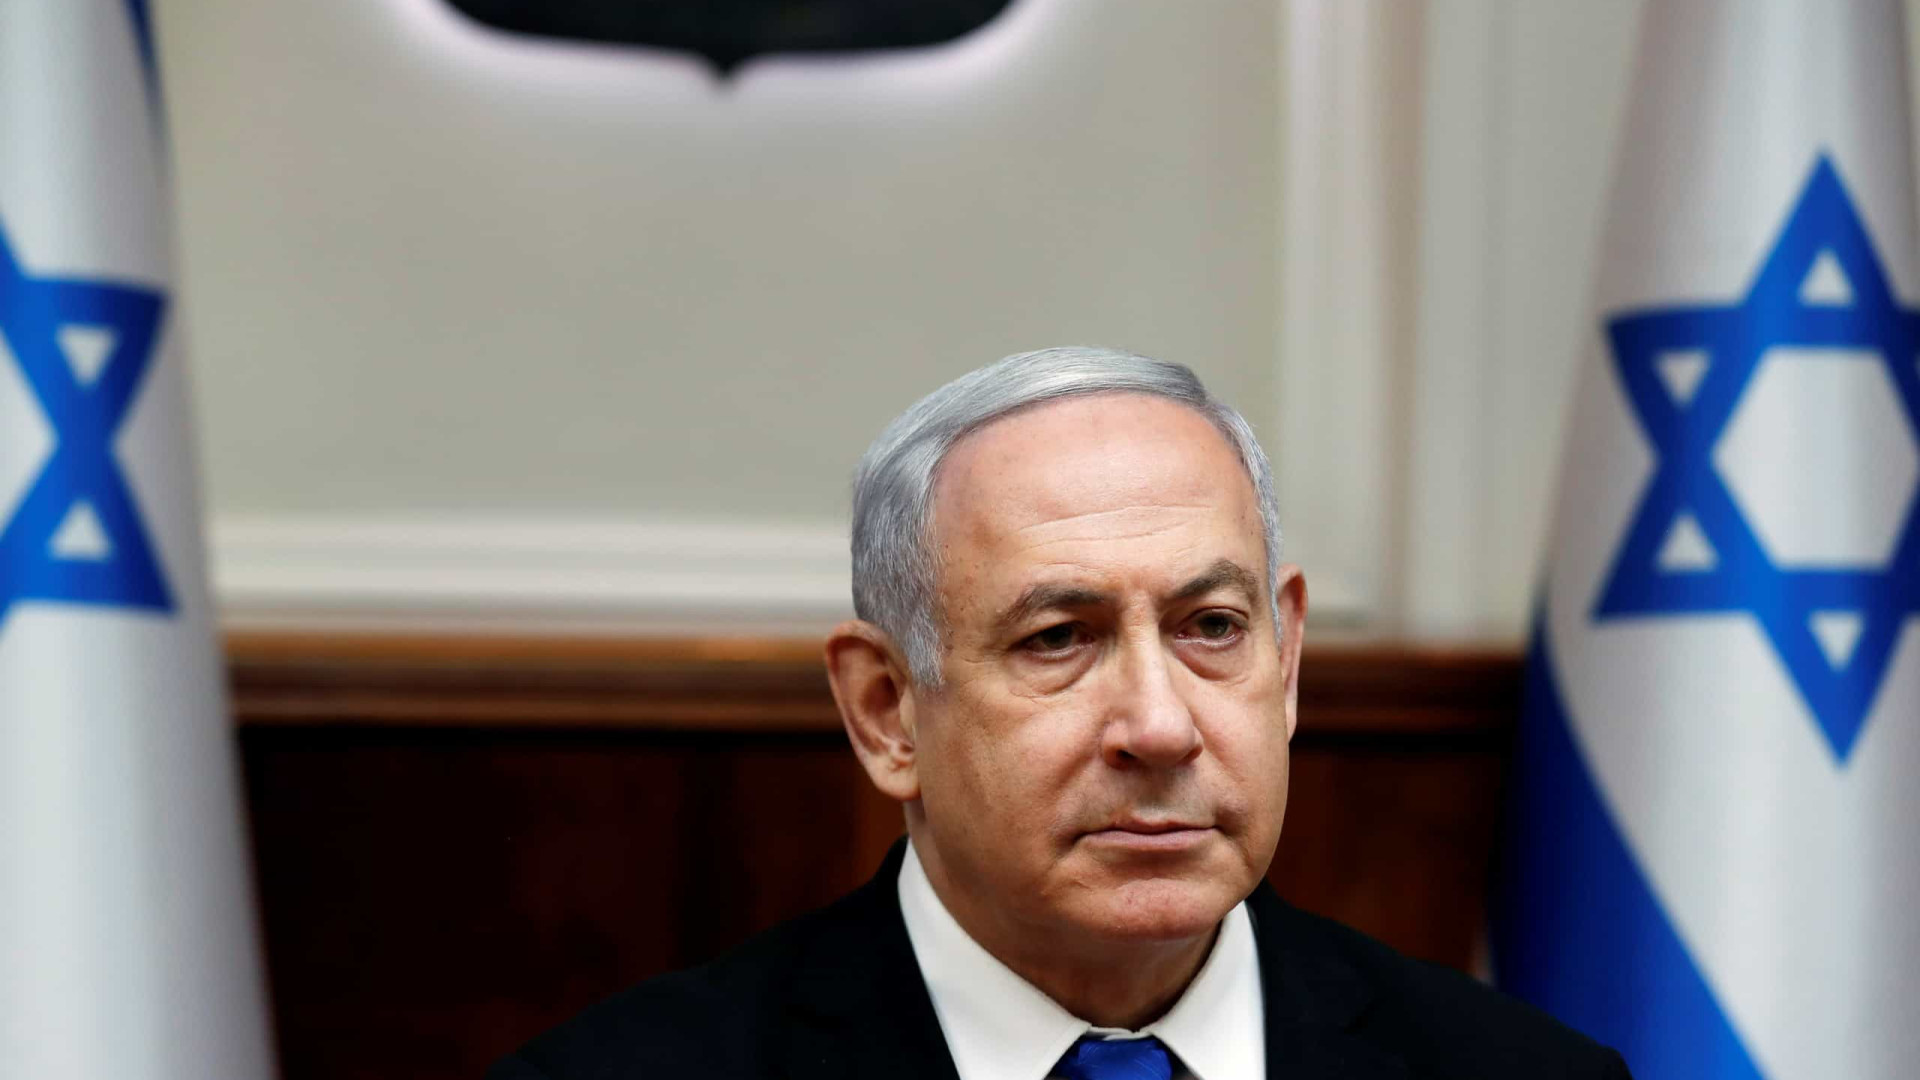 Netanyahu condena ataque e amplia isolamento de Bolsonaro mesmo entre conservadores